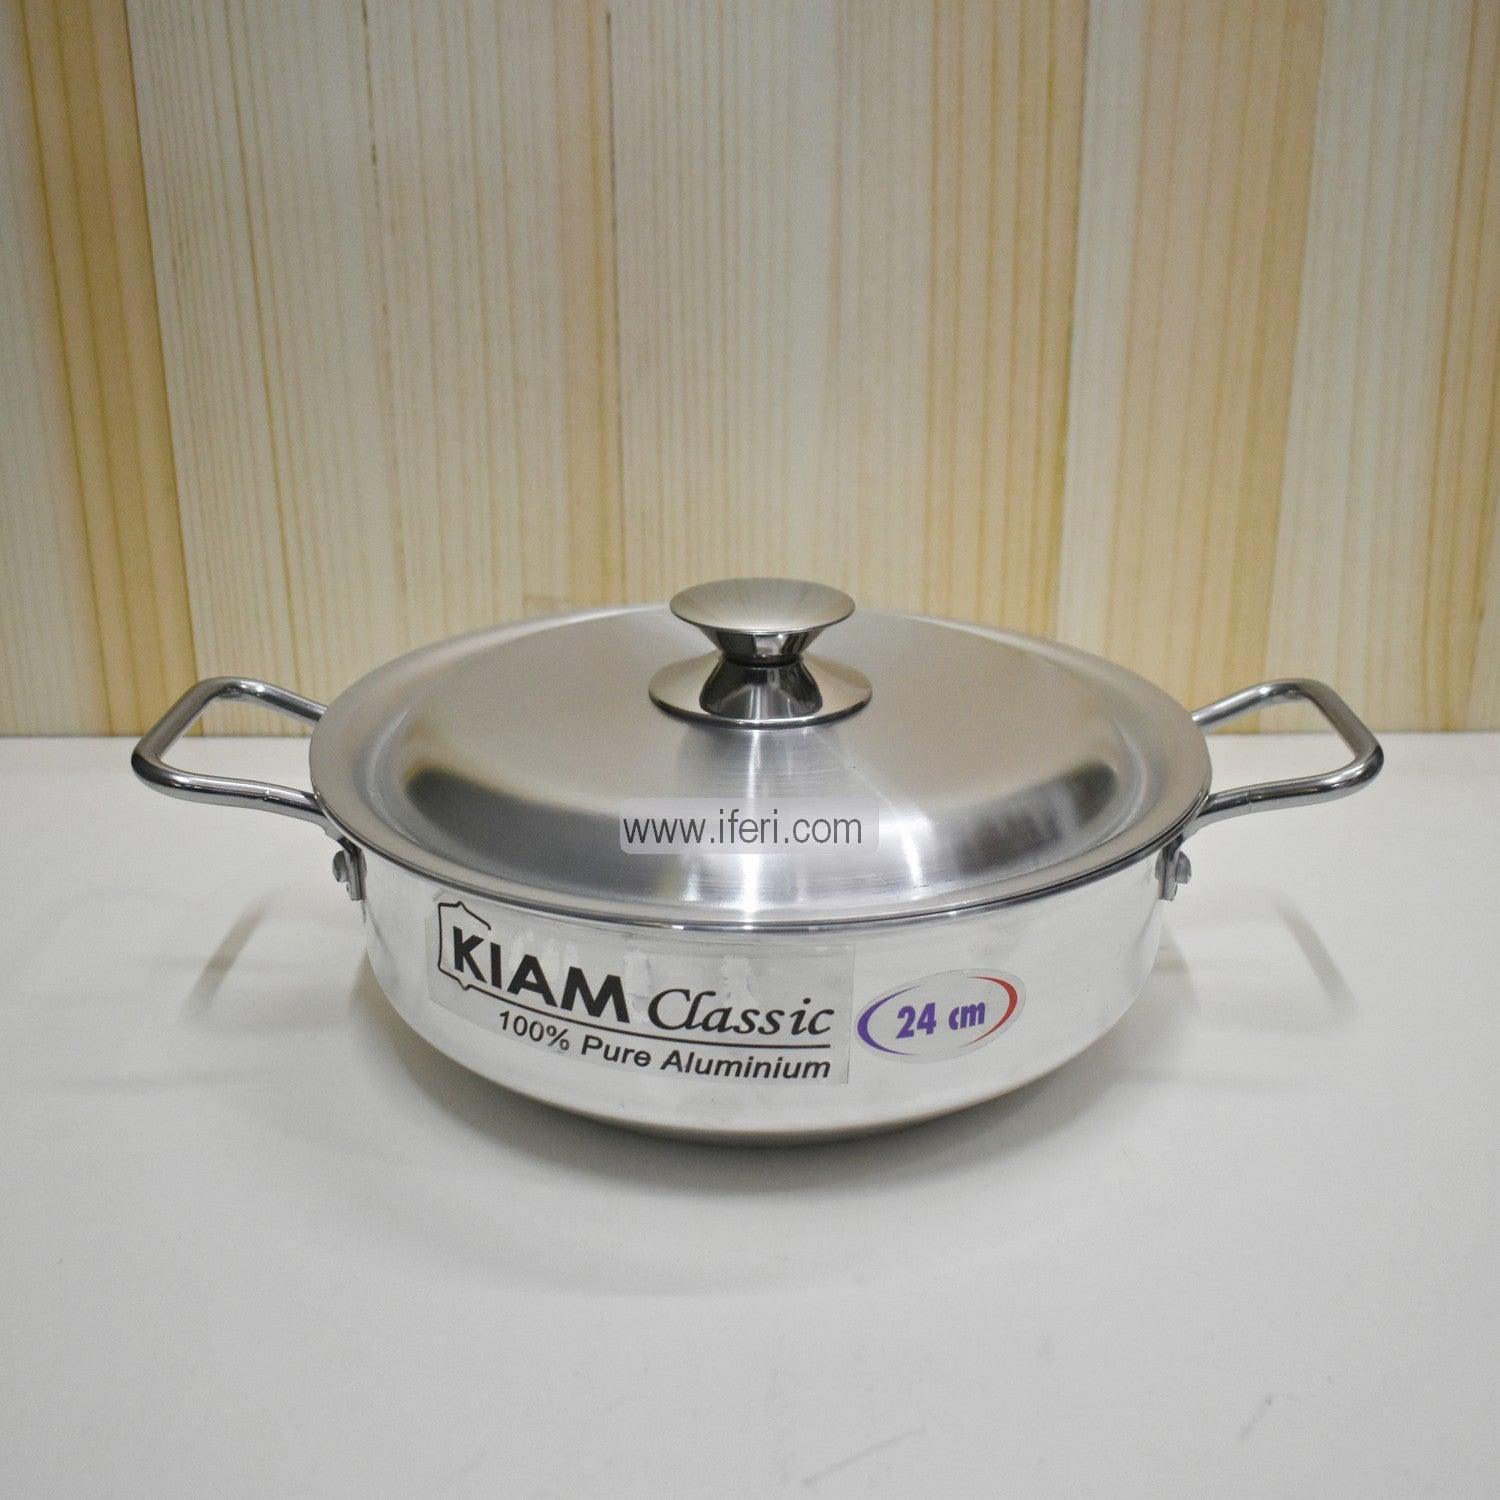 30 cm Kiam Aluminium Classic Korai Cookware With Aluminium Lid BCG0220 Price in Bangladesh - iferi.com